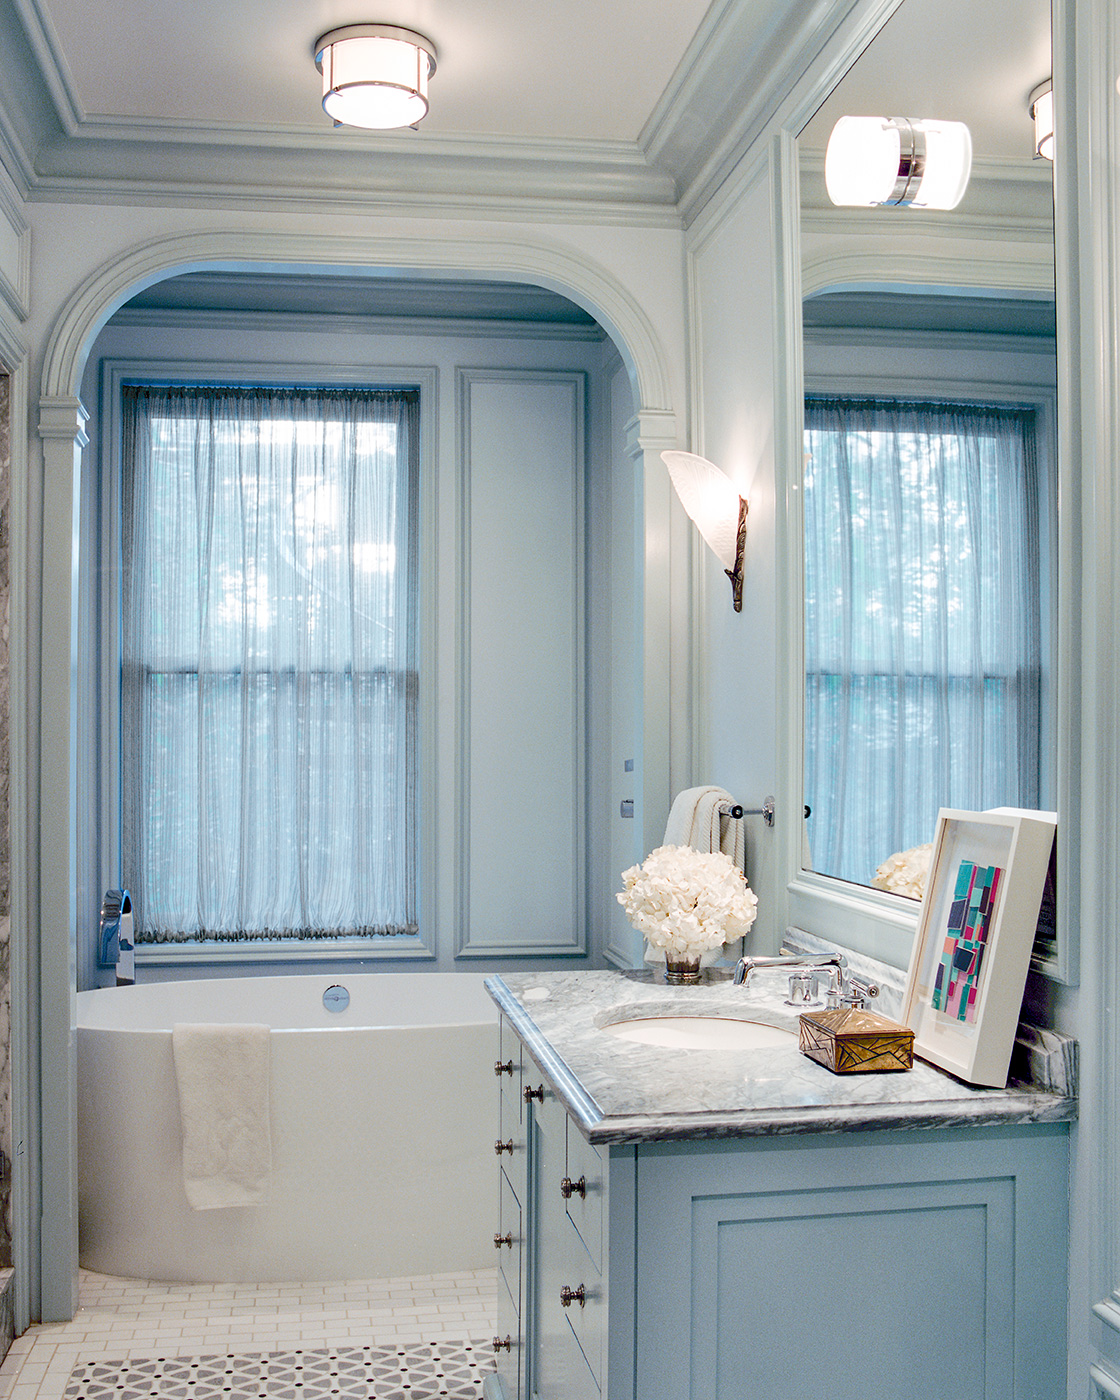 Badrumsinspiration: Gråblått badrum med vackra snickerier